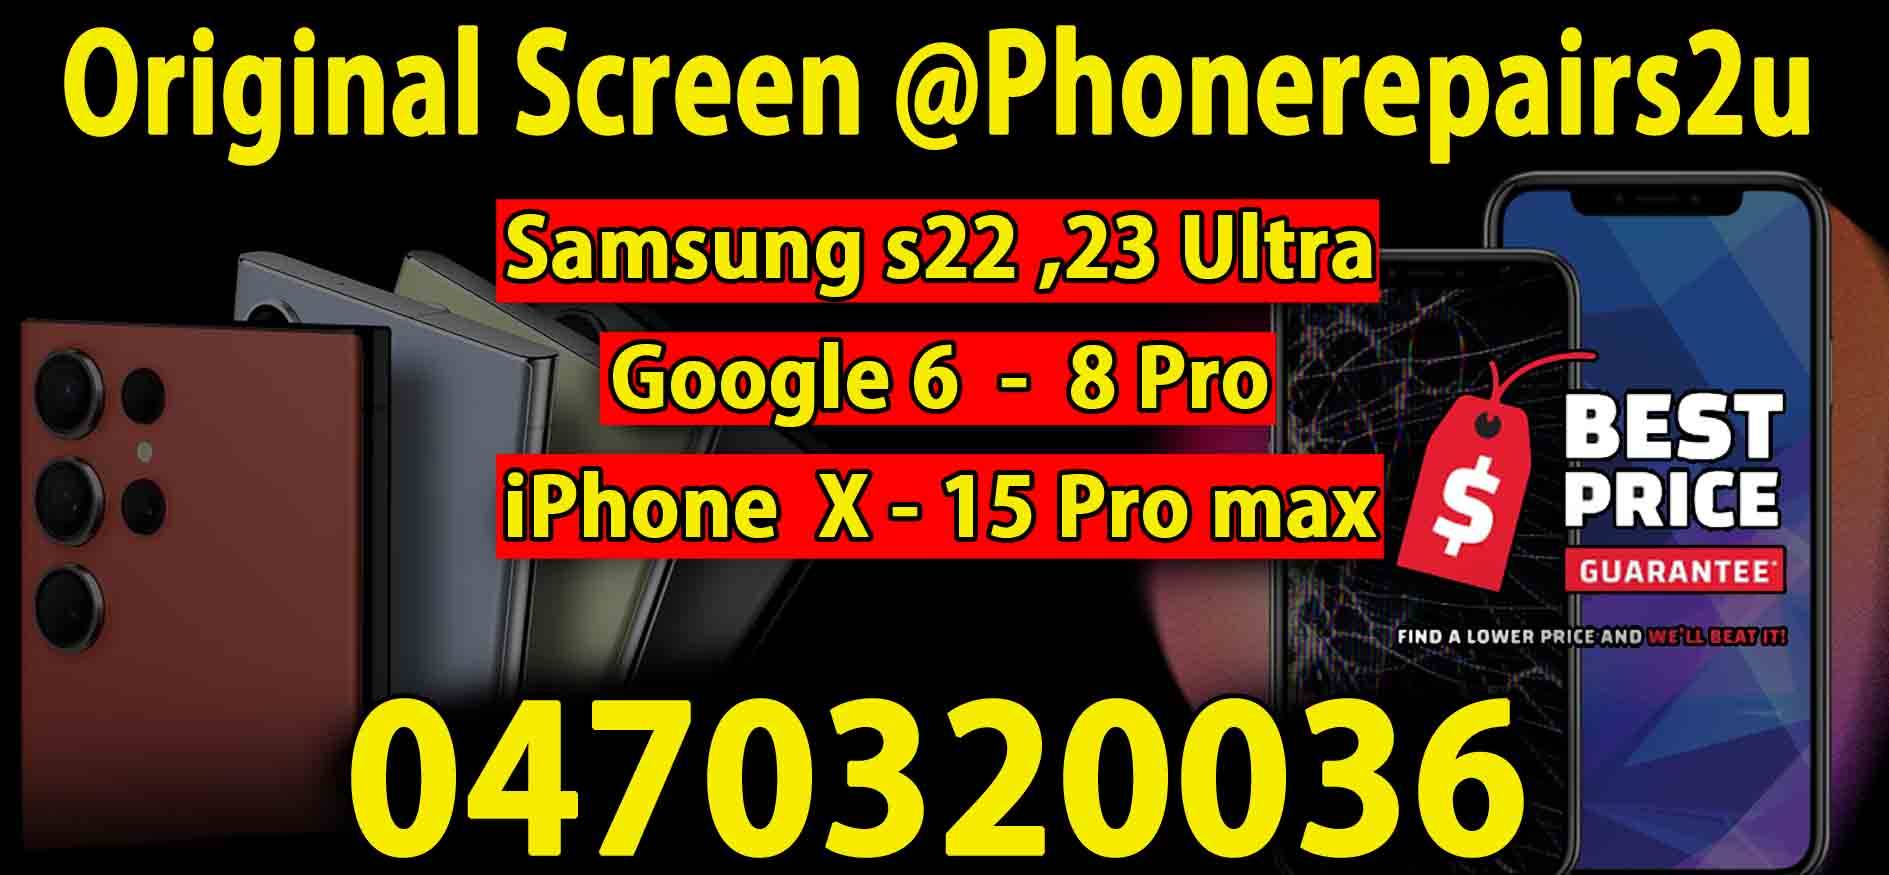 samsung screen repair google screen repair apple screen repair mobile phone repair service that come to you sydney